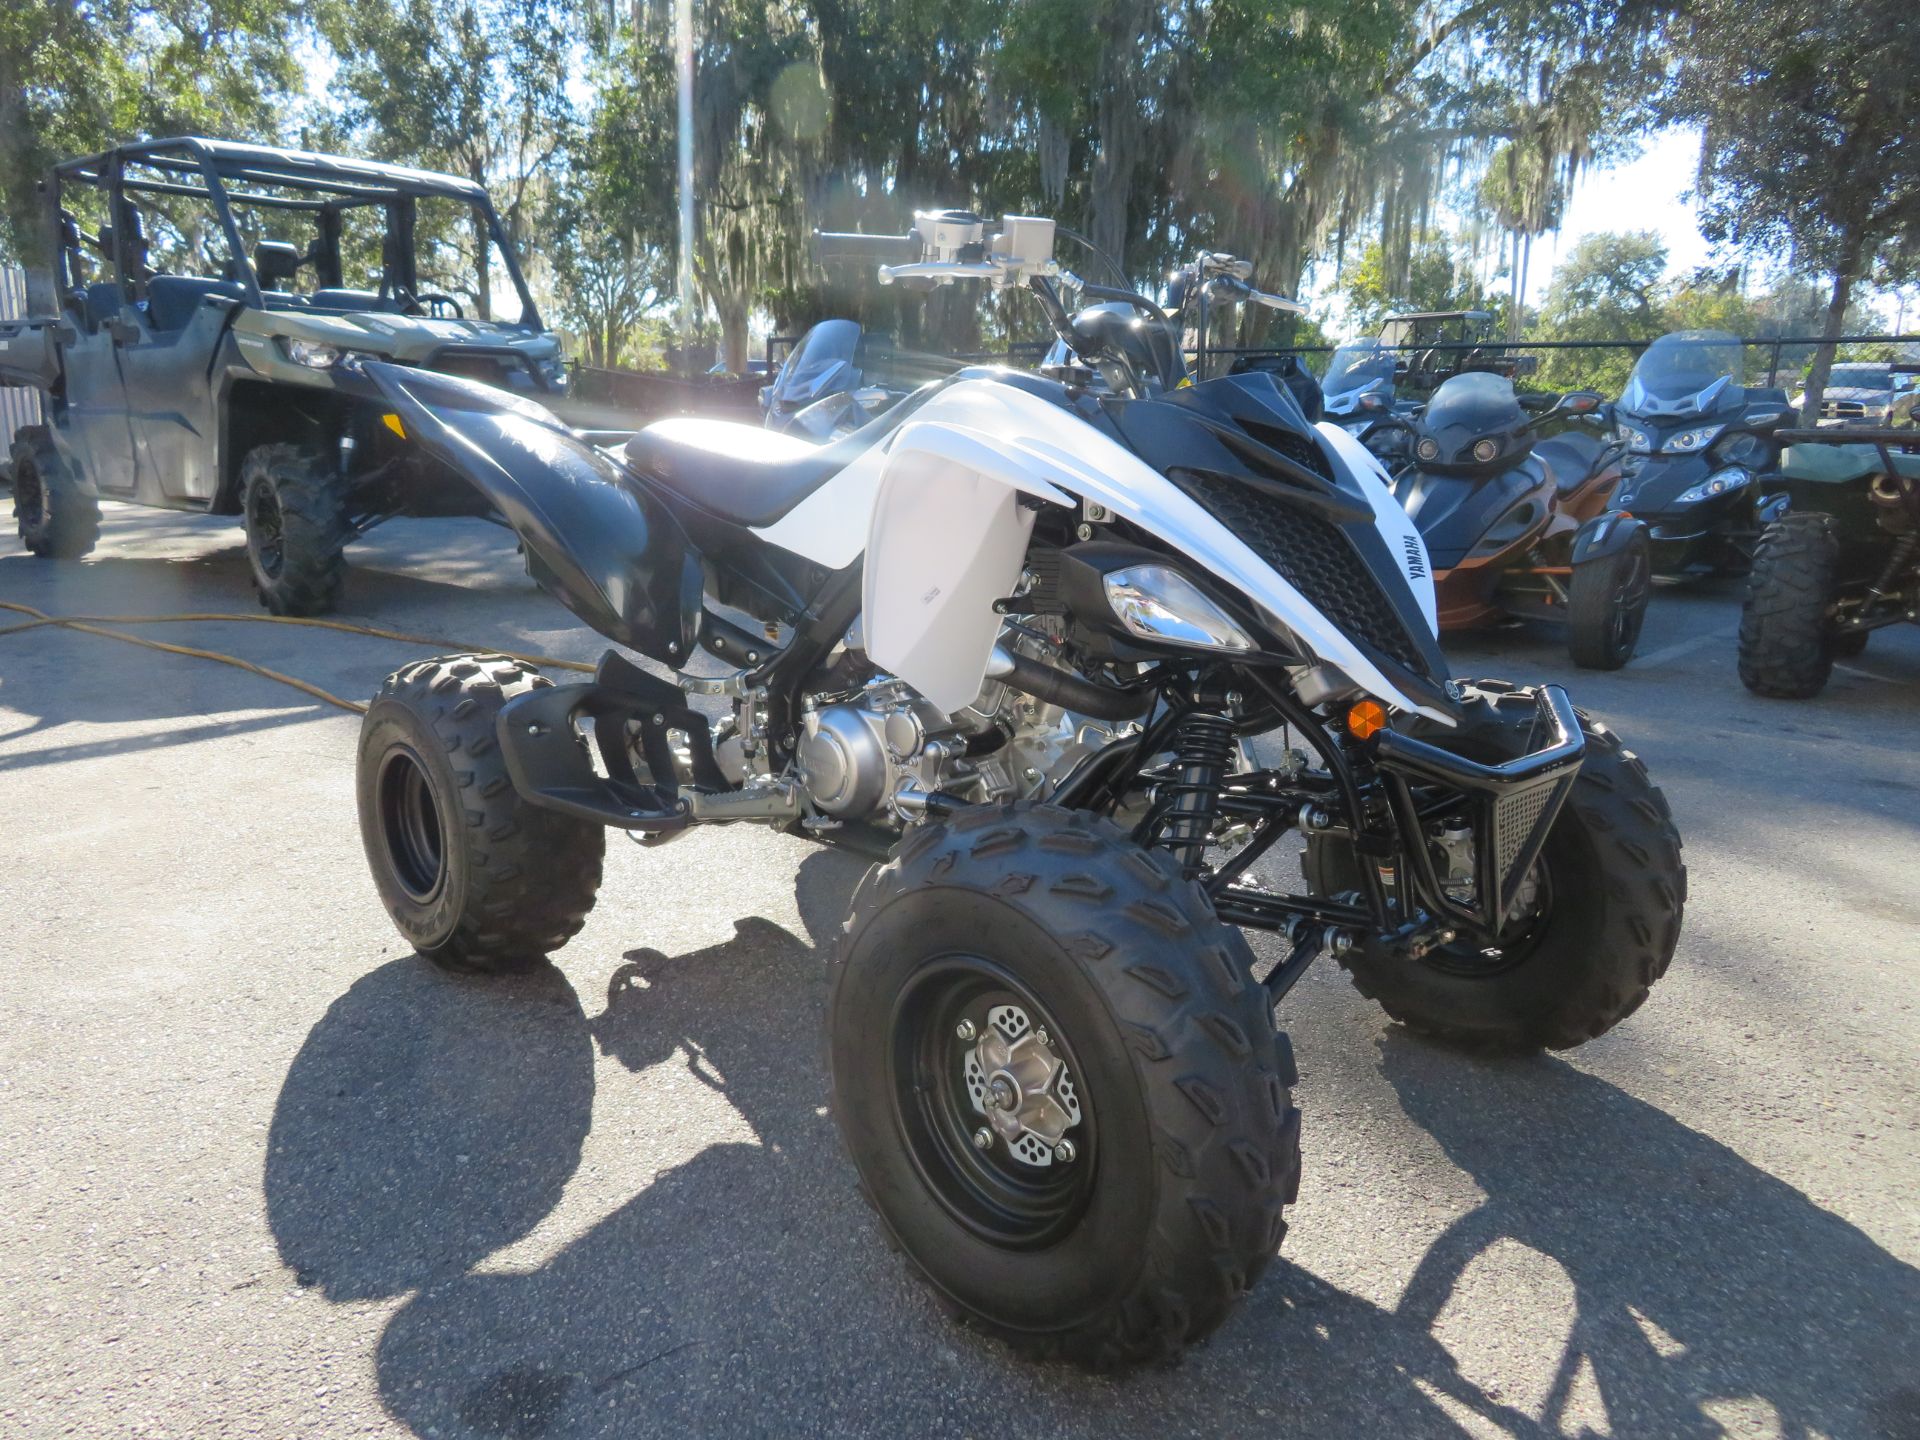 2020 Yamaha Raptor 700 in Sanford, Florida - Photo 2